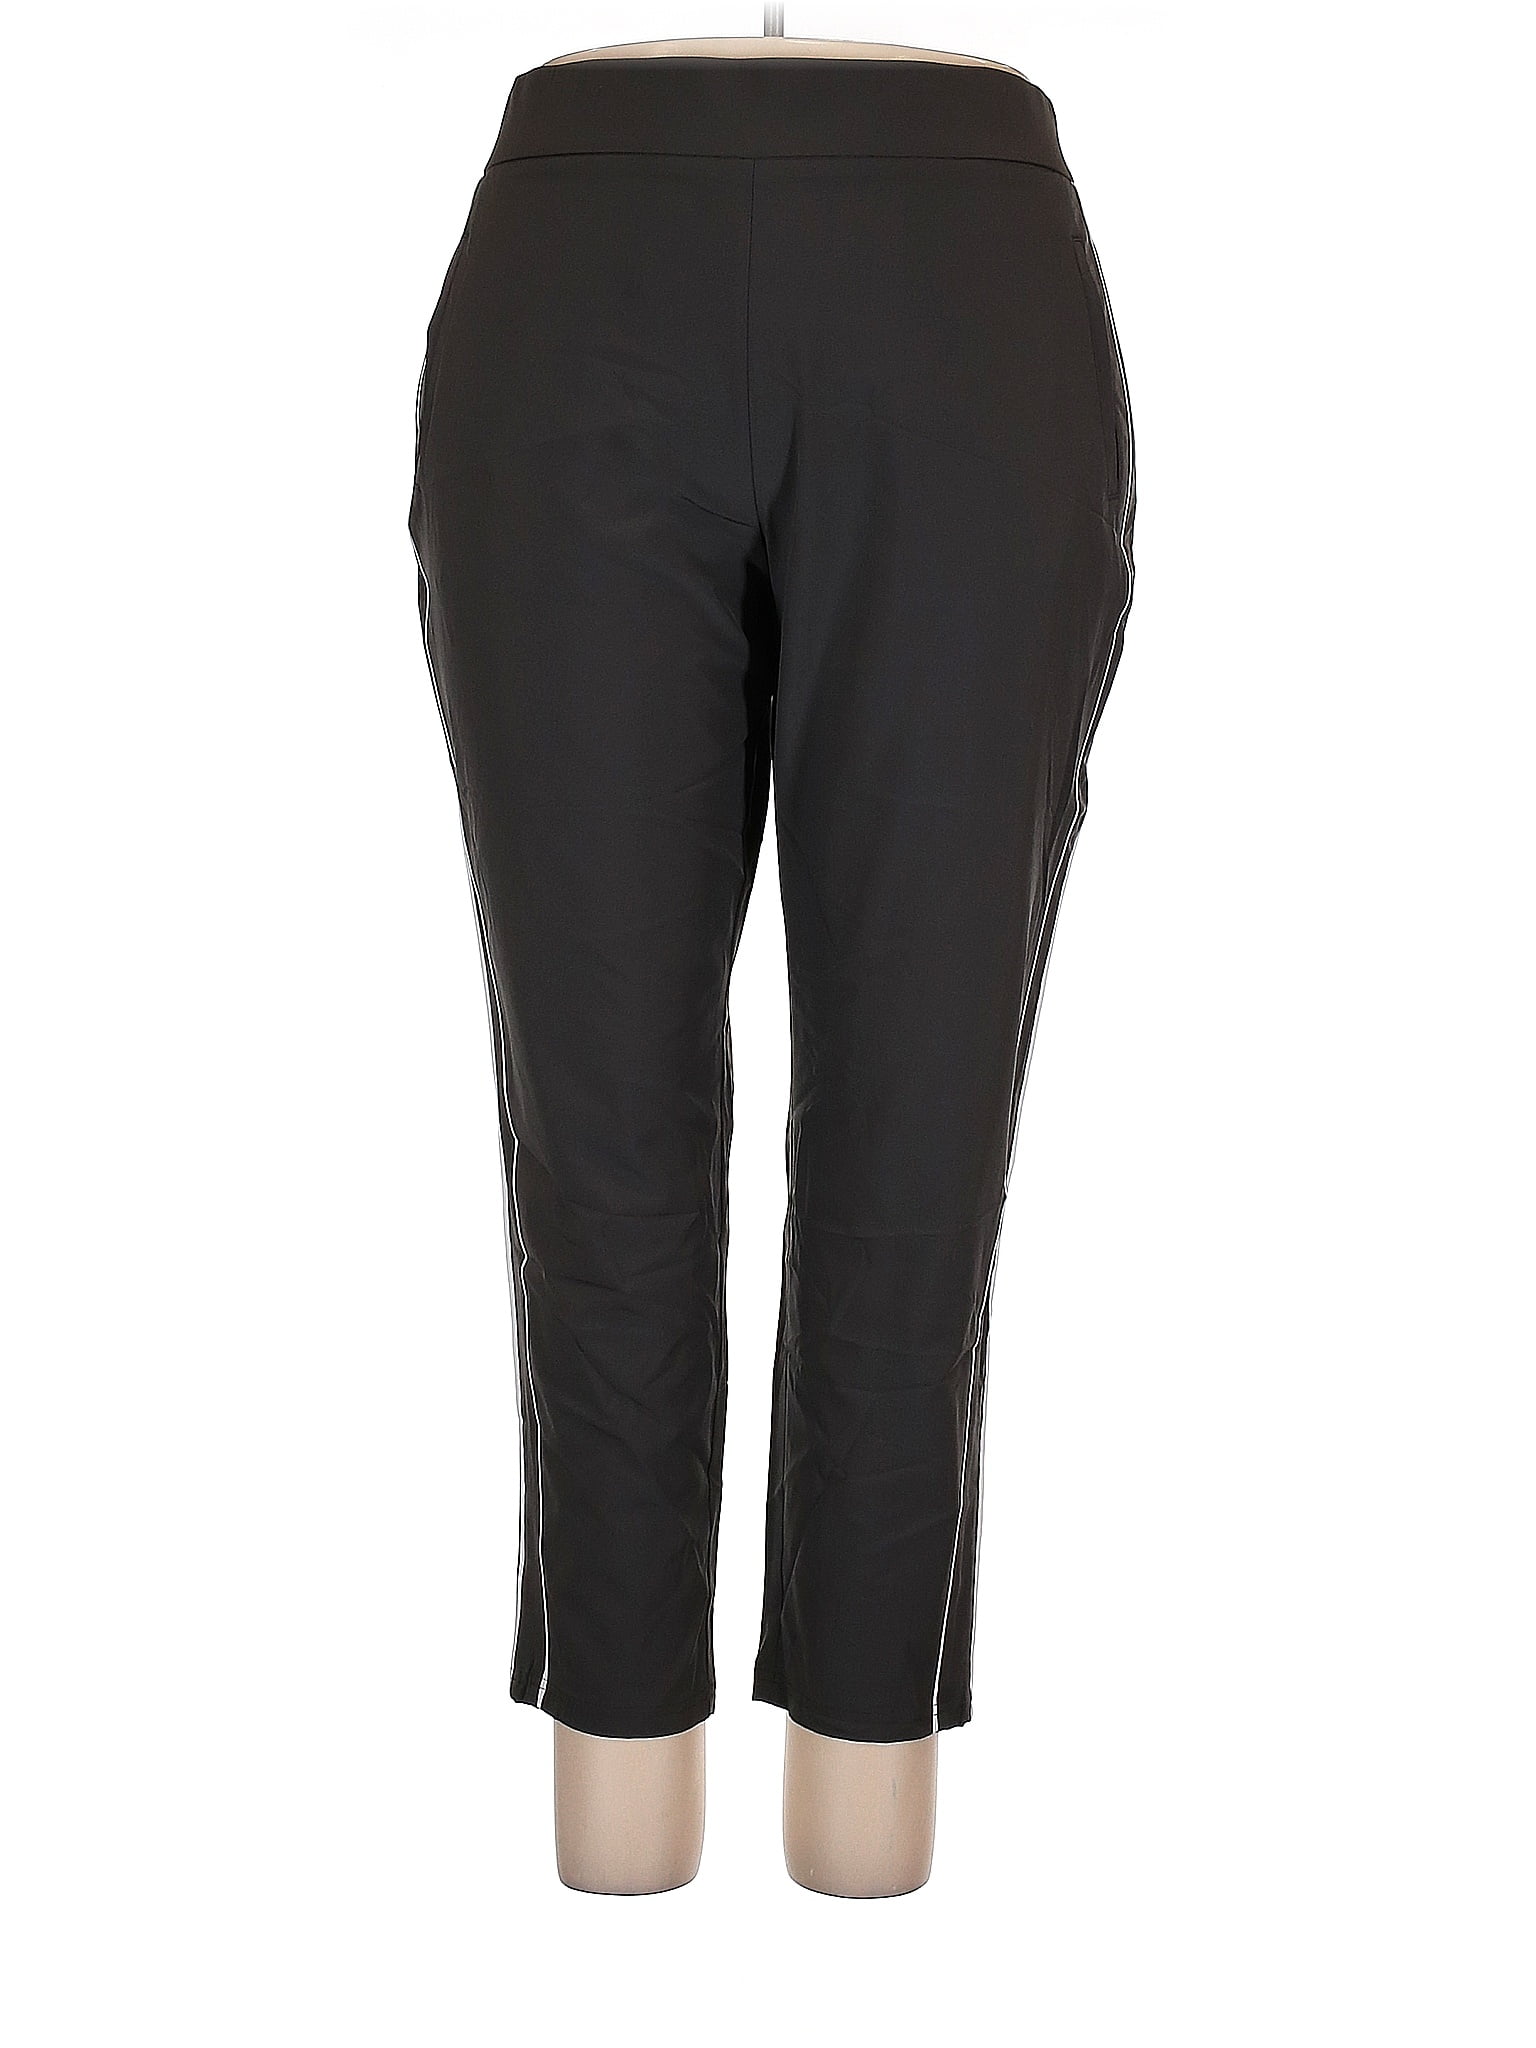 Simply Vera Vera Wang Polka Dots Black Gray Casual Pants Size XXL - 75% ...